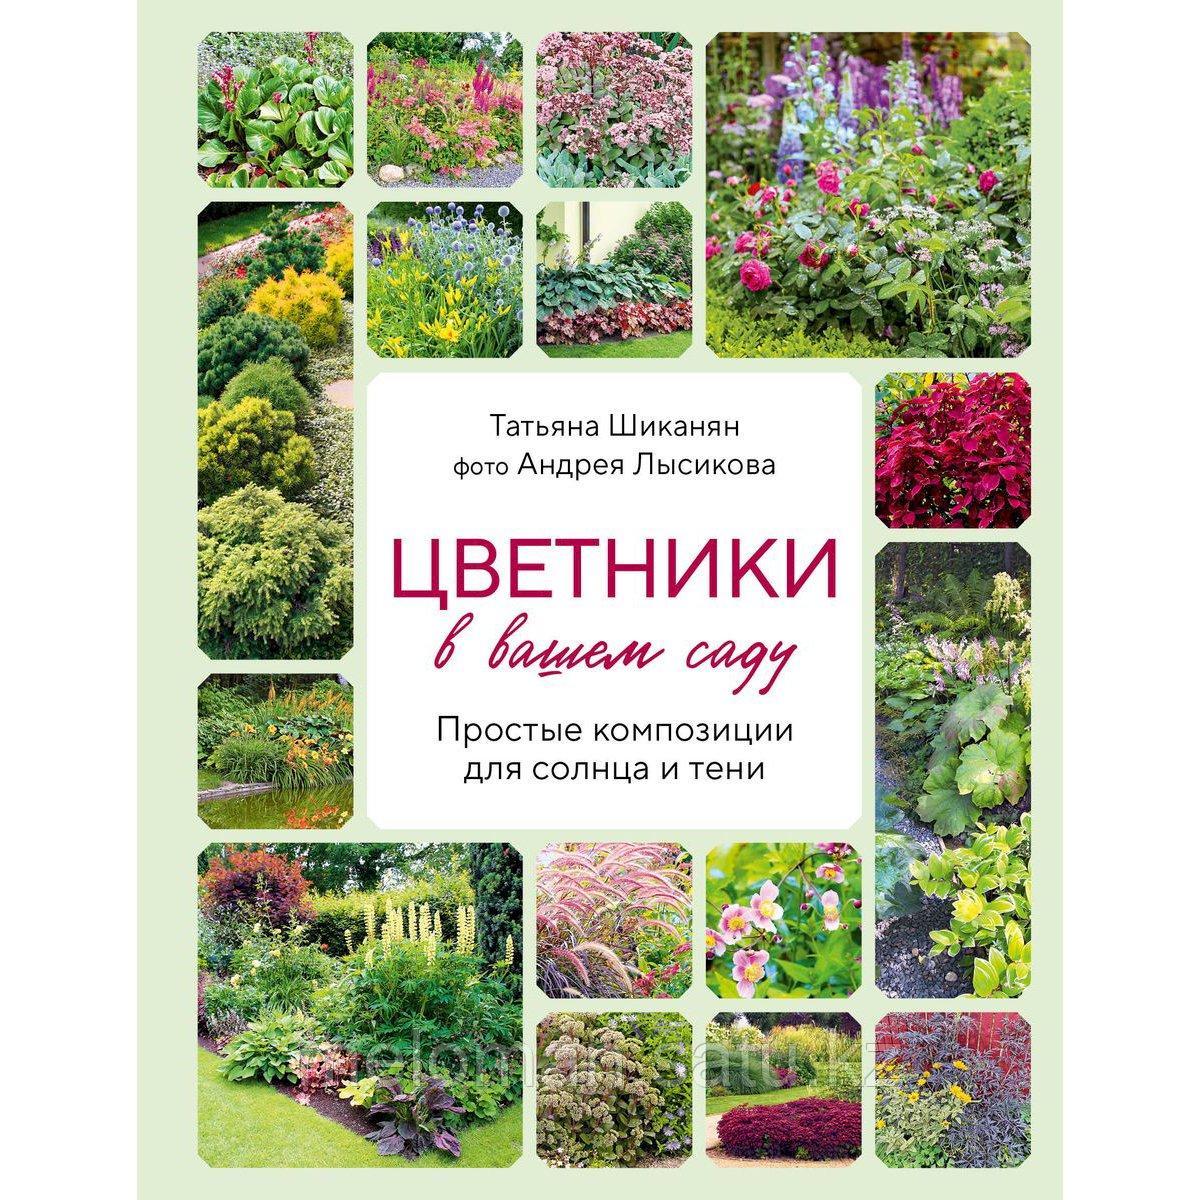 Шиканян Т. Д., Лысиков А. Б.: Цветники в вашем саду. Простые композиции для солнца и тени